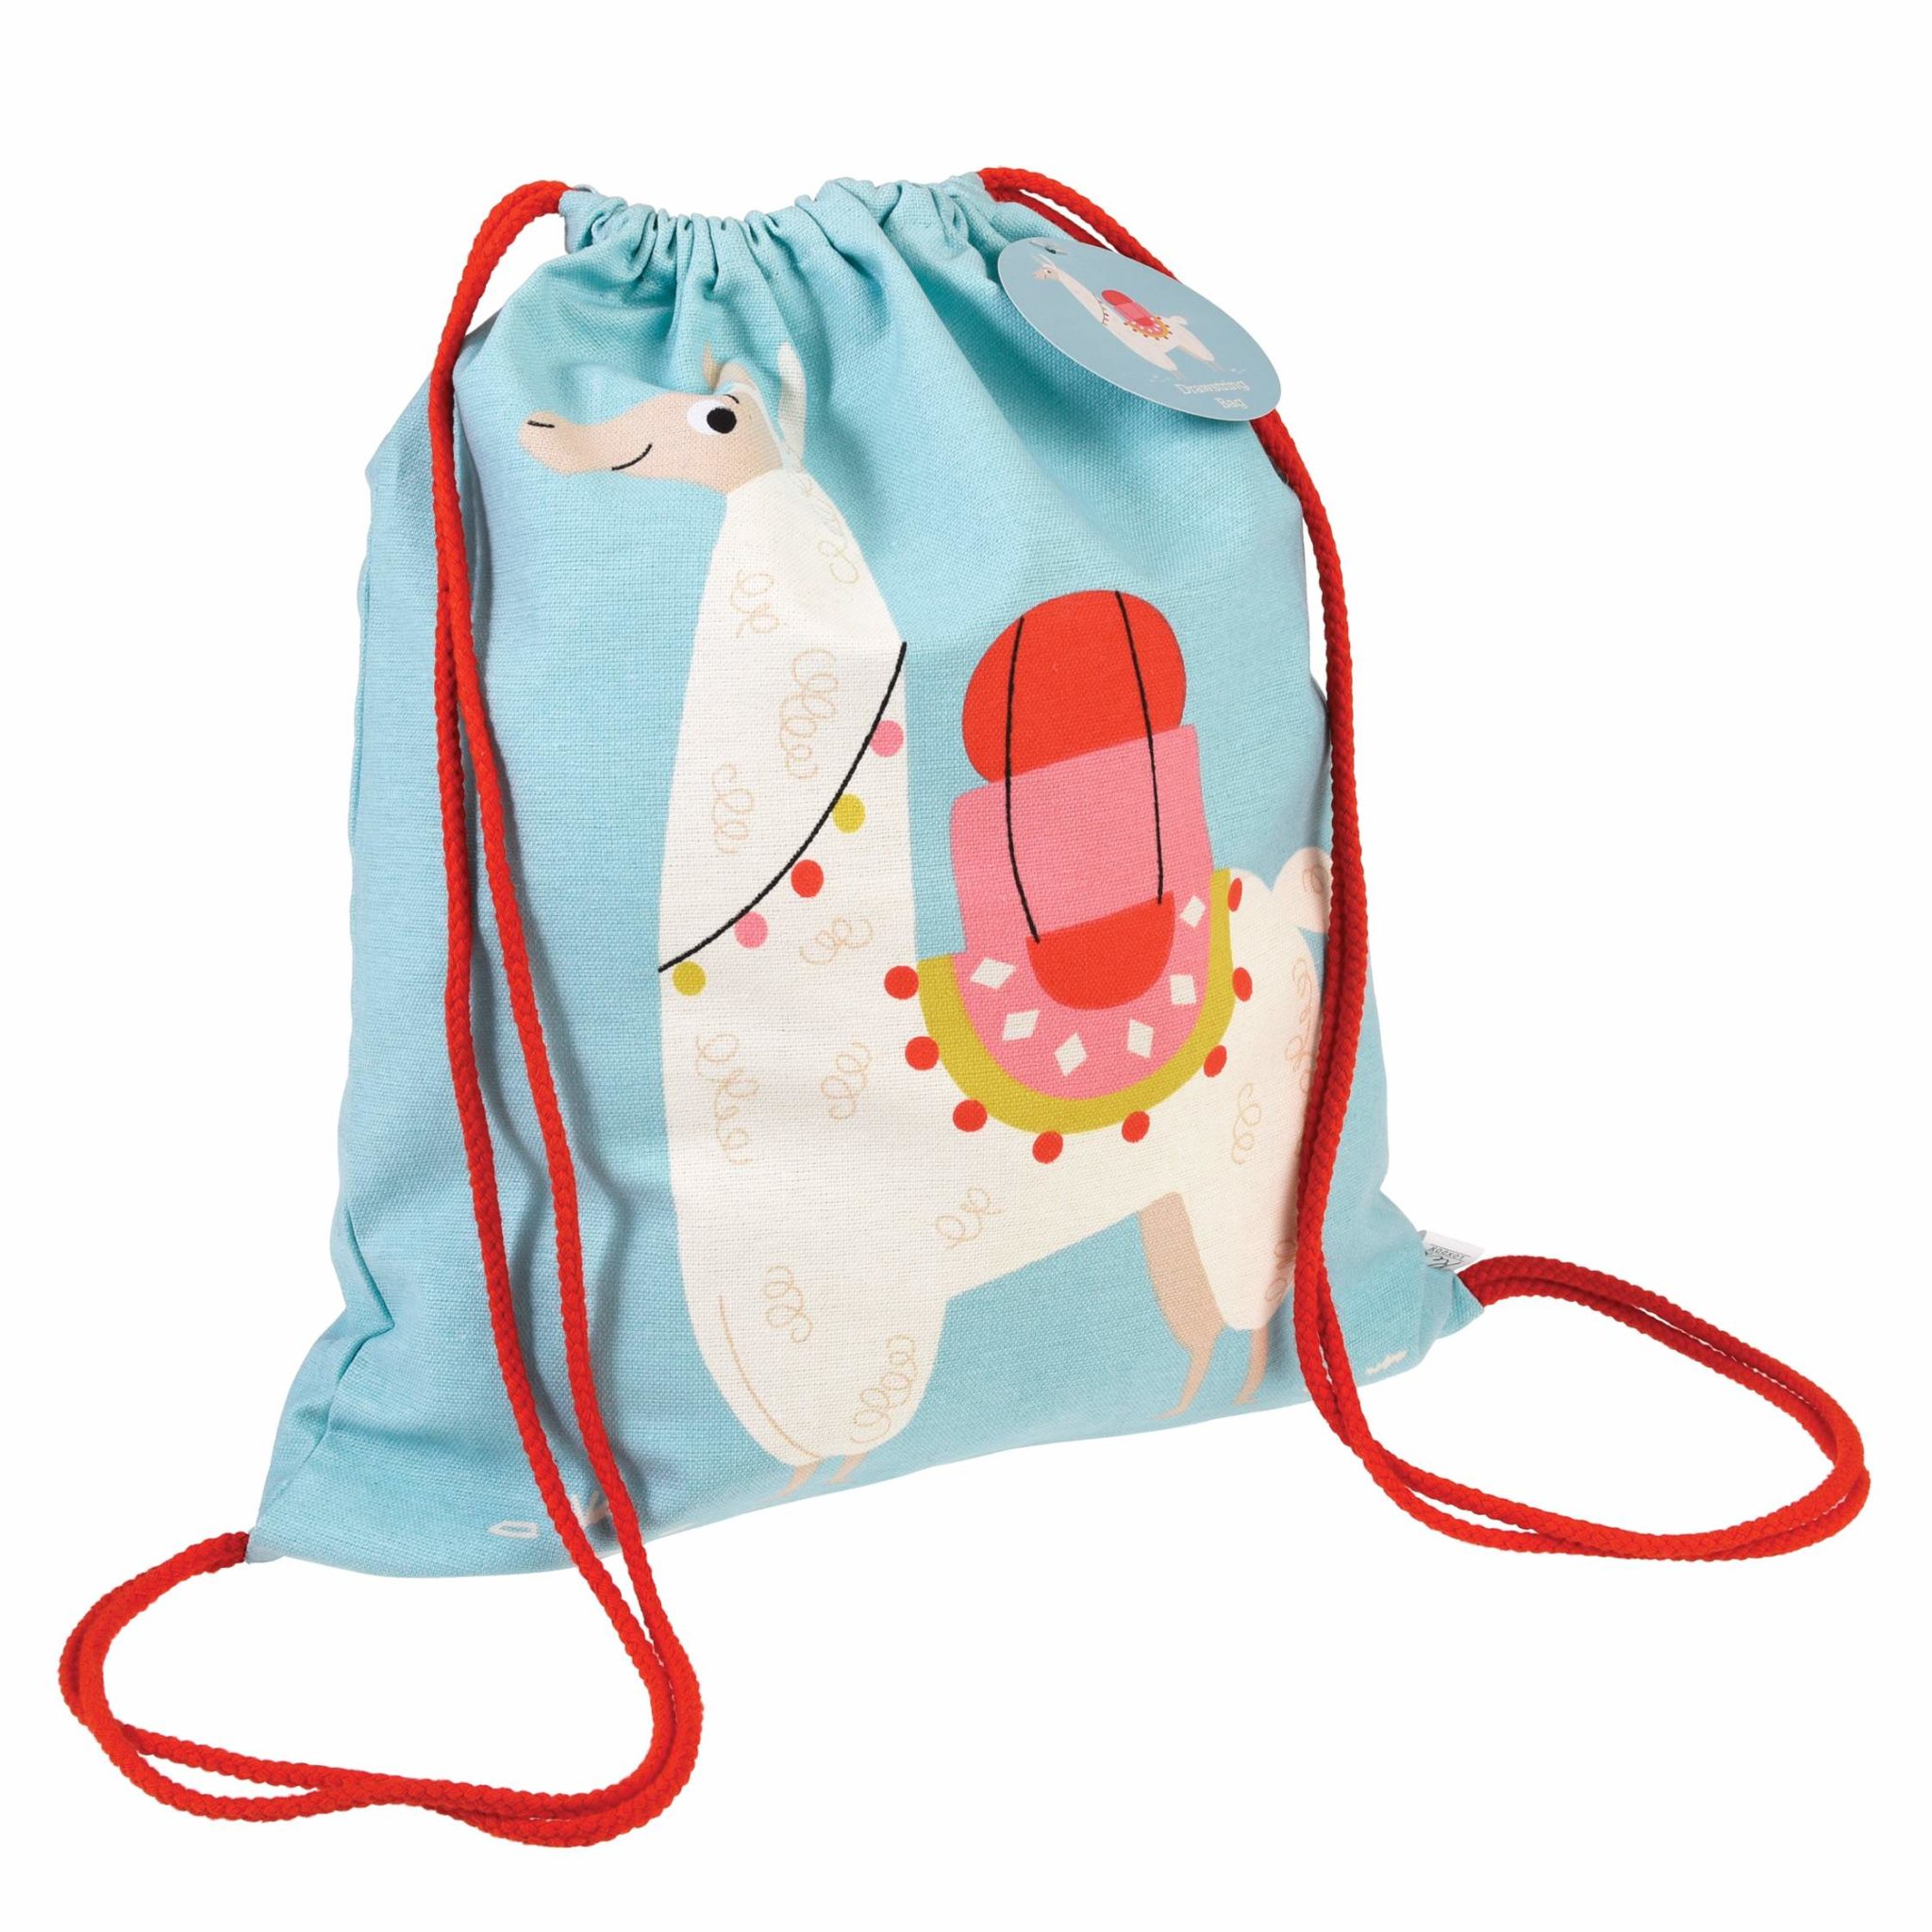 Dolly Llama drawstring bag filled with kit